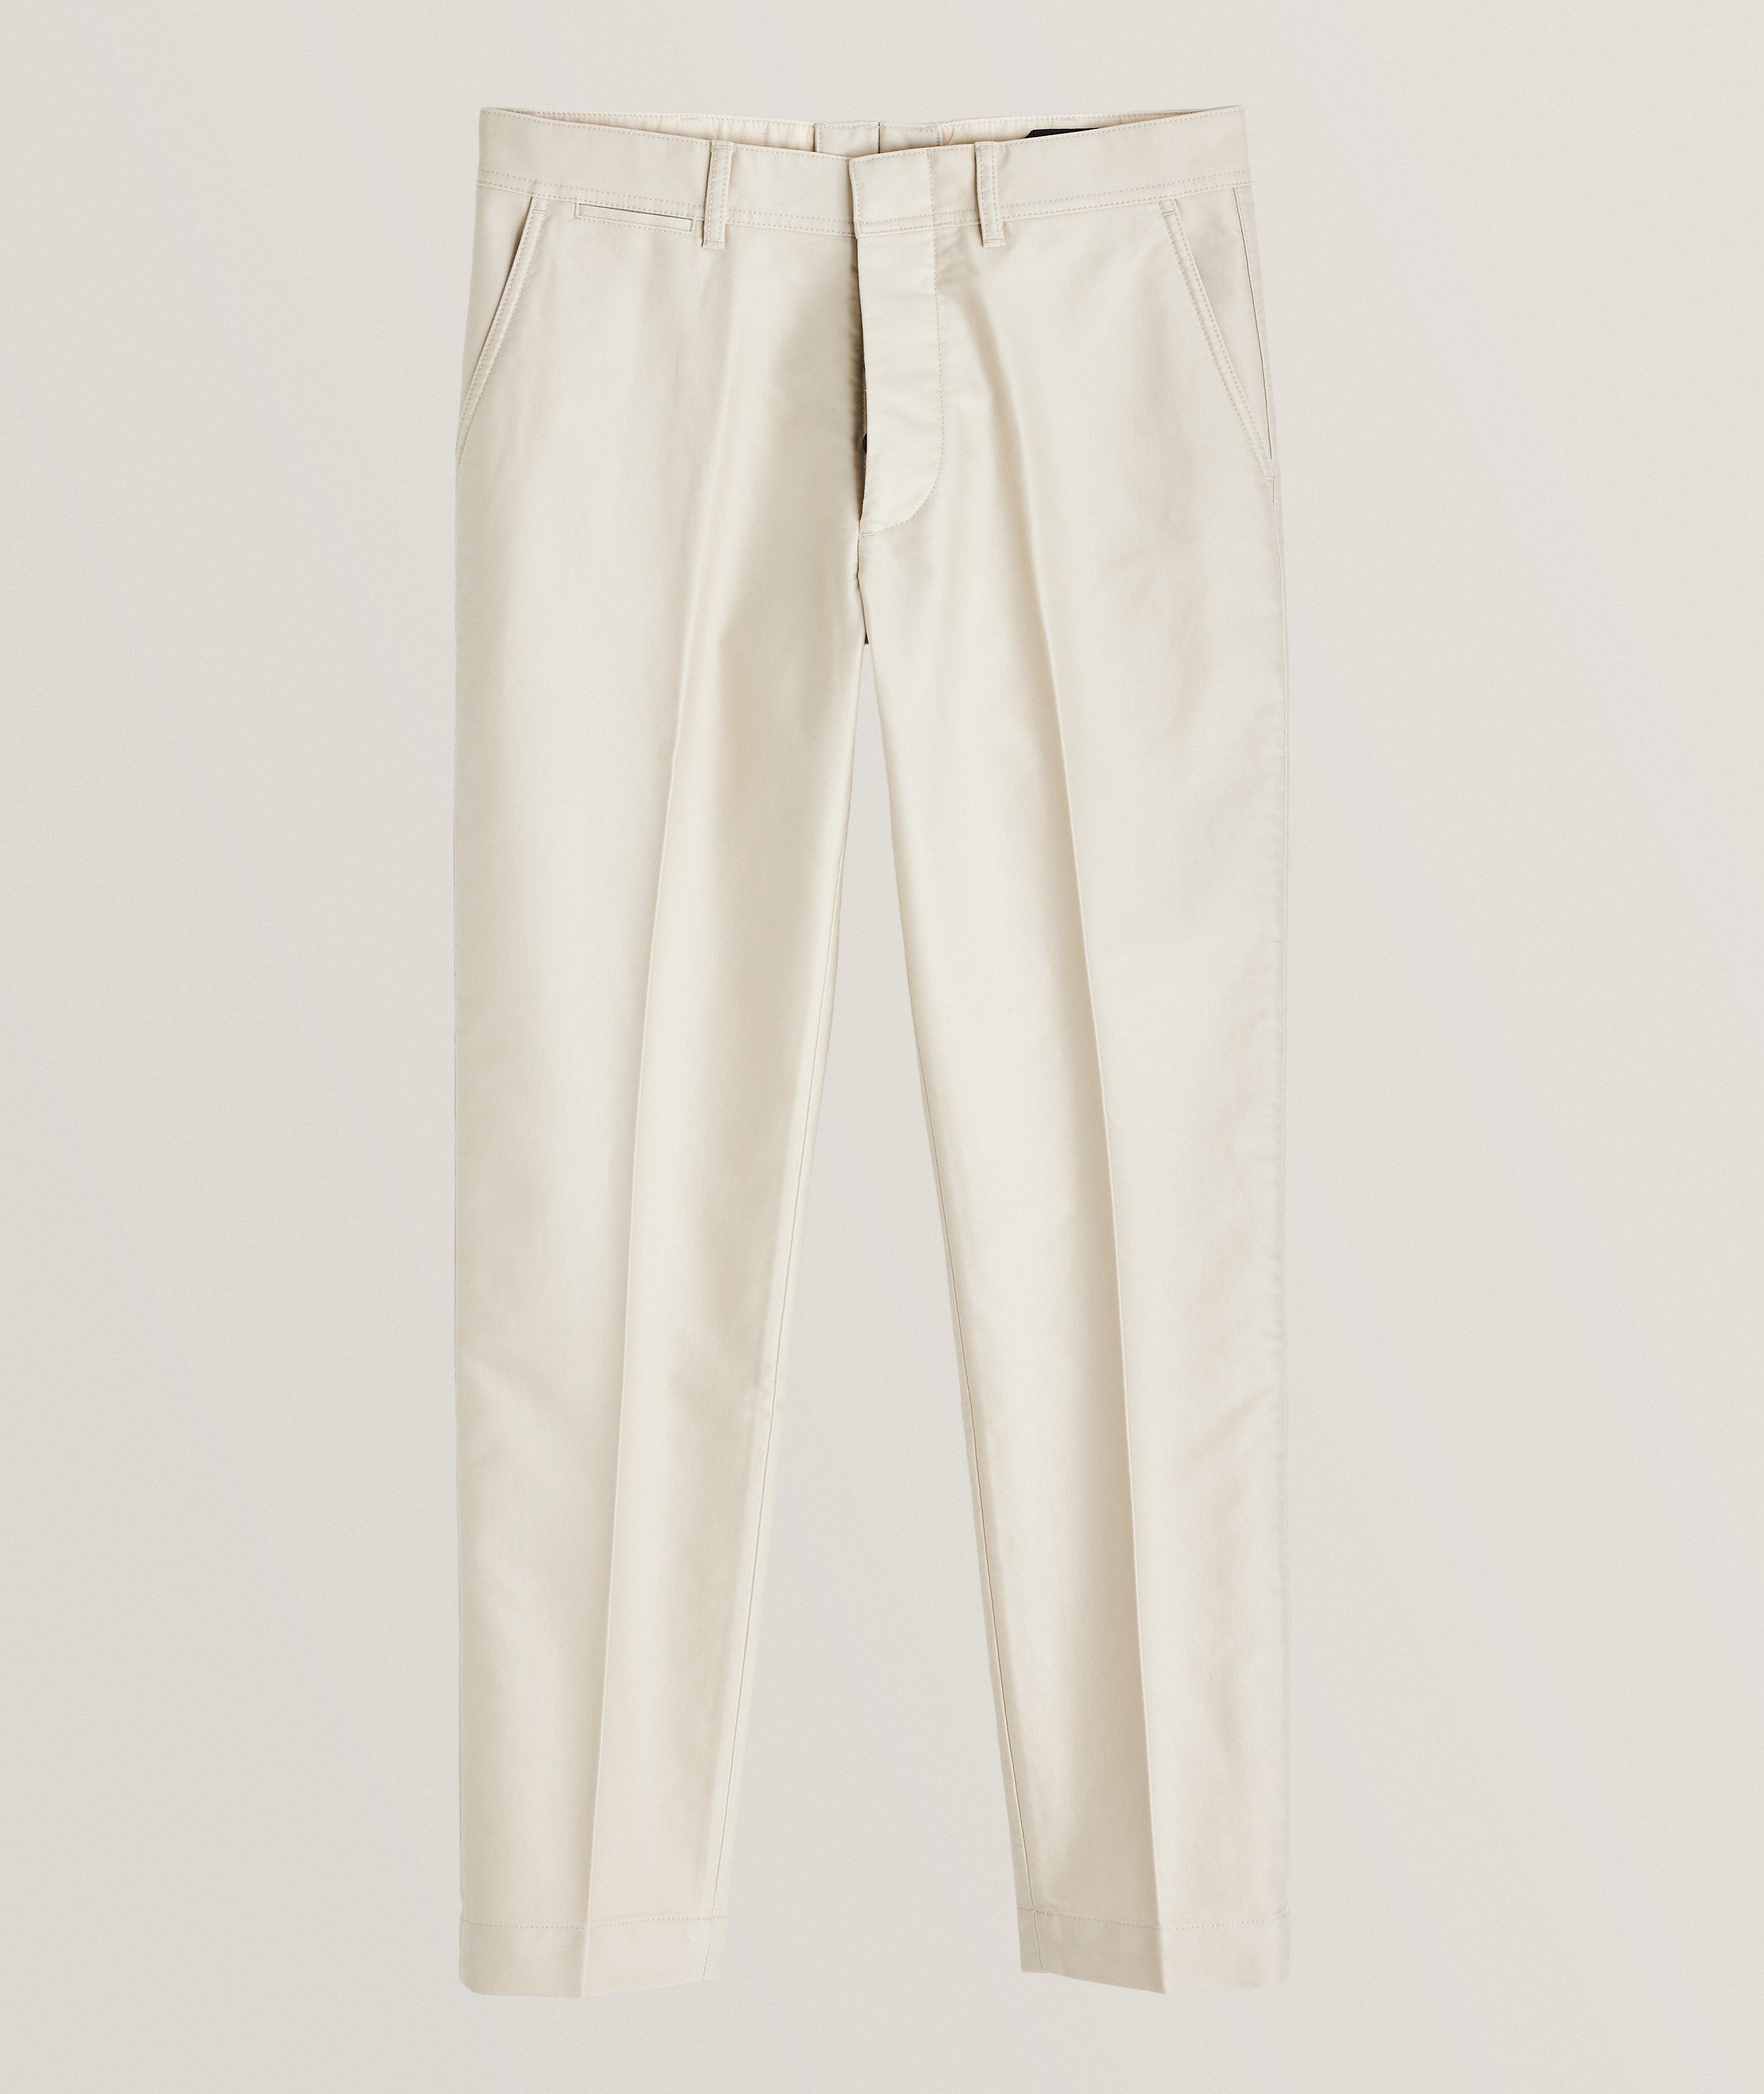 Compact Cotton Chino Pants image 0